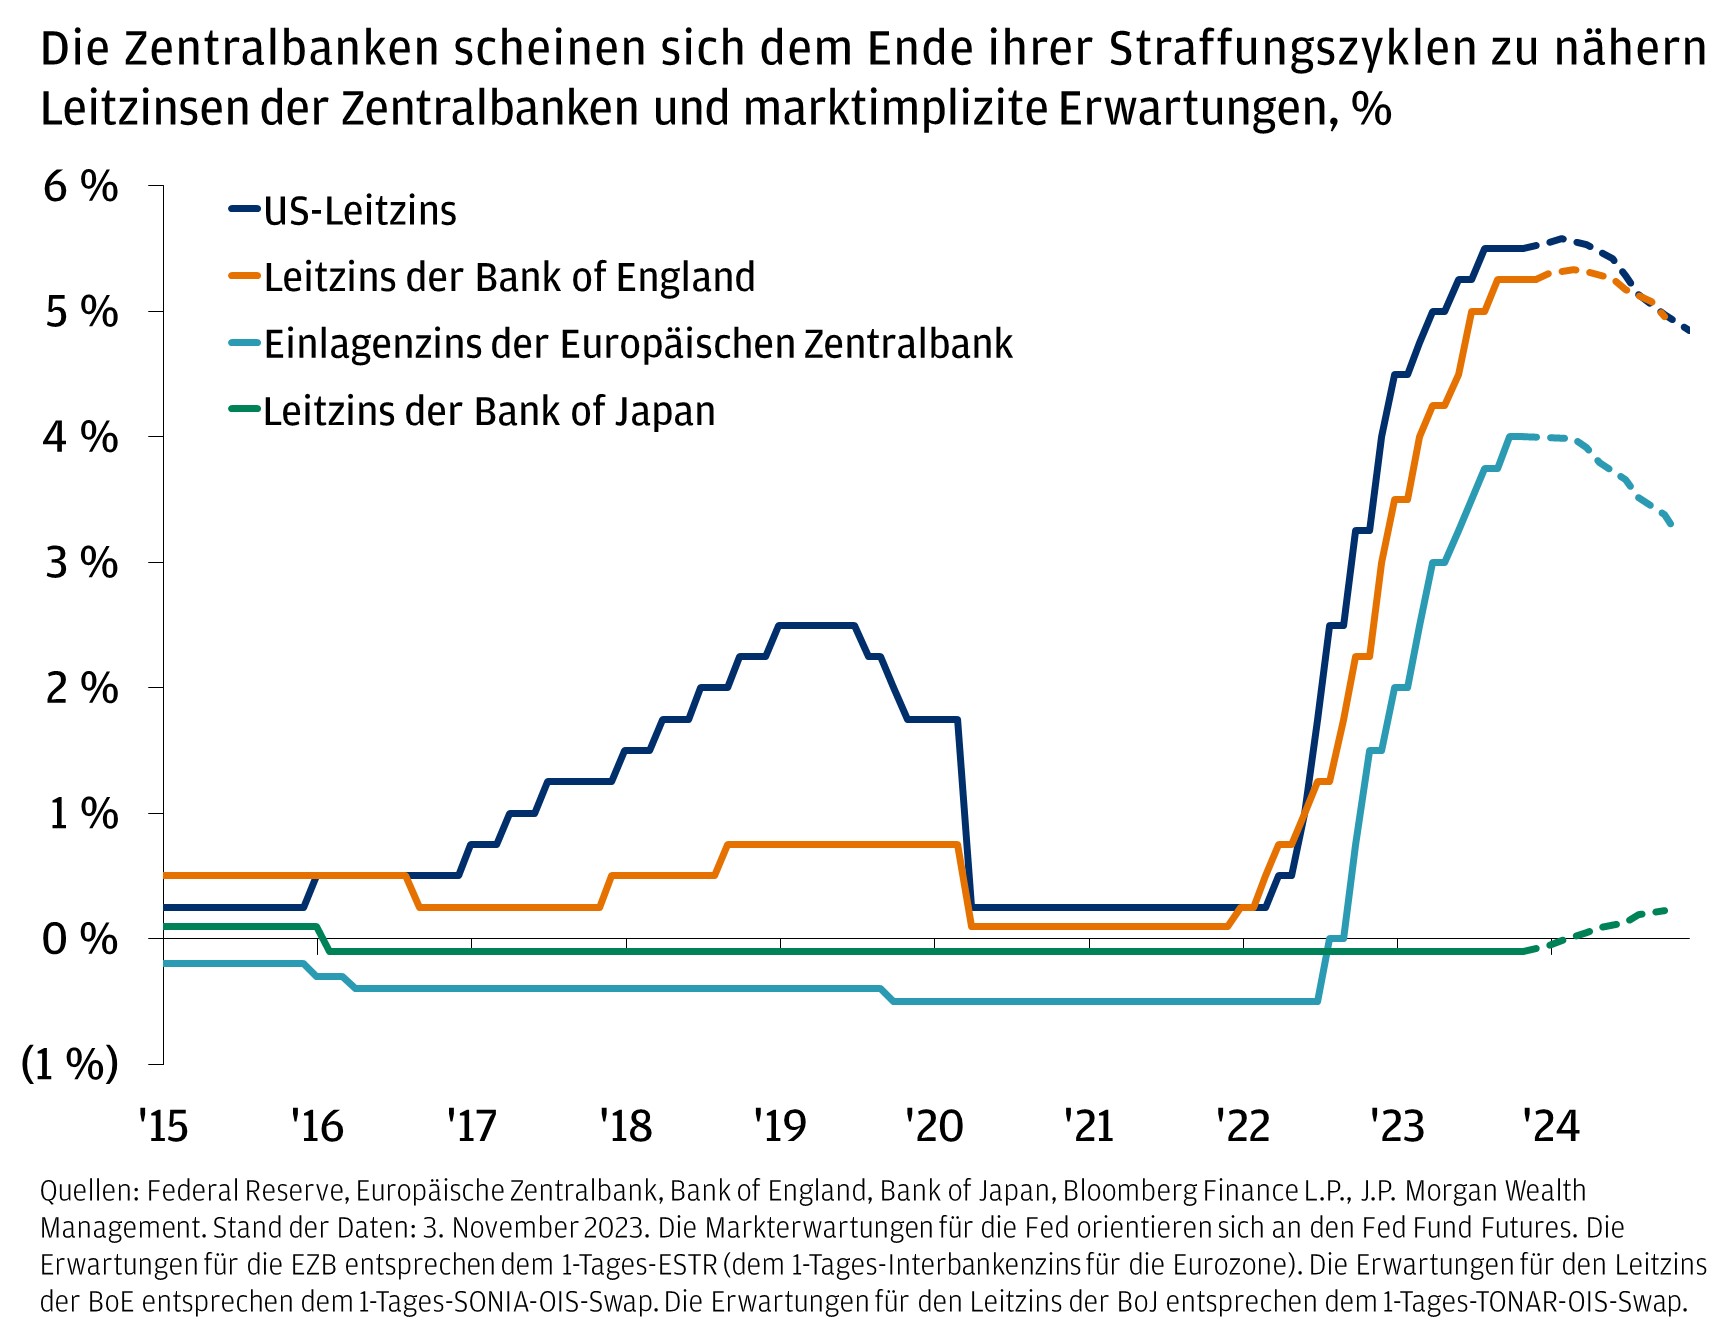 Die Zentralbanken scheinen sich dem Ende ihrer Straffungszyklen zu nähern